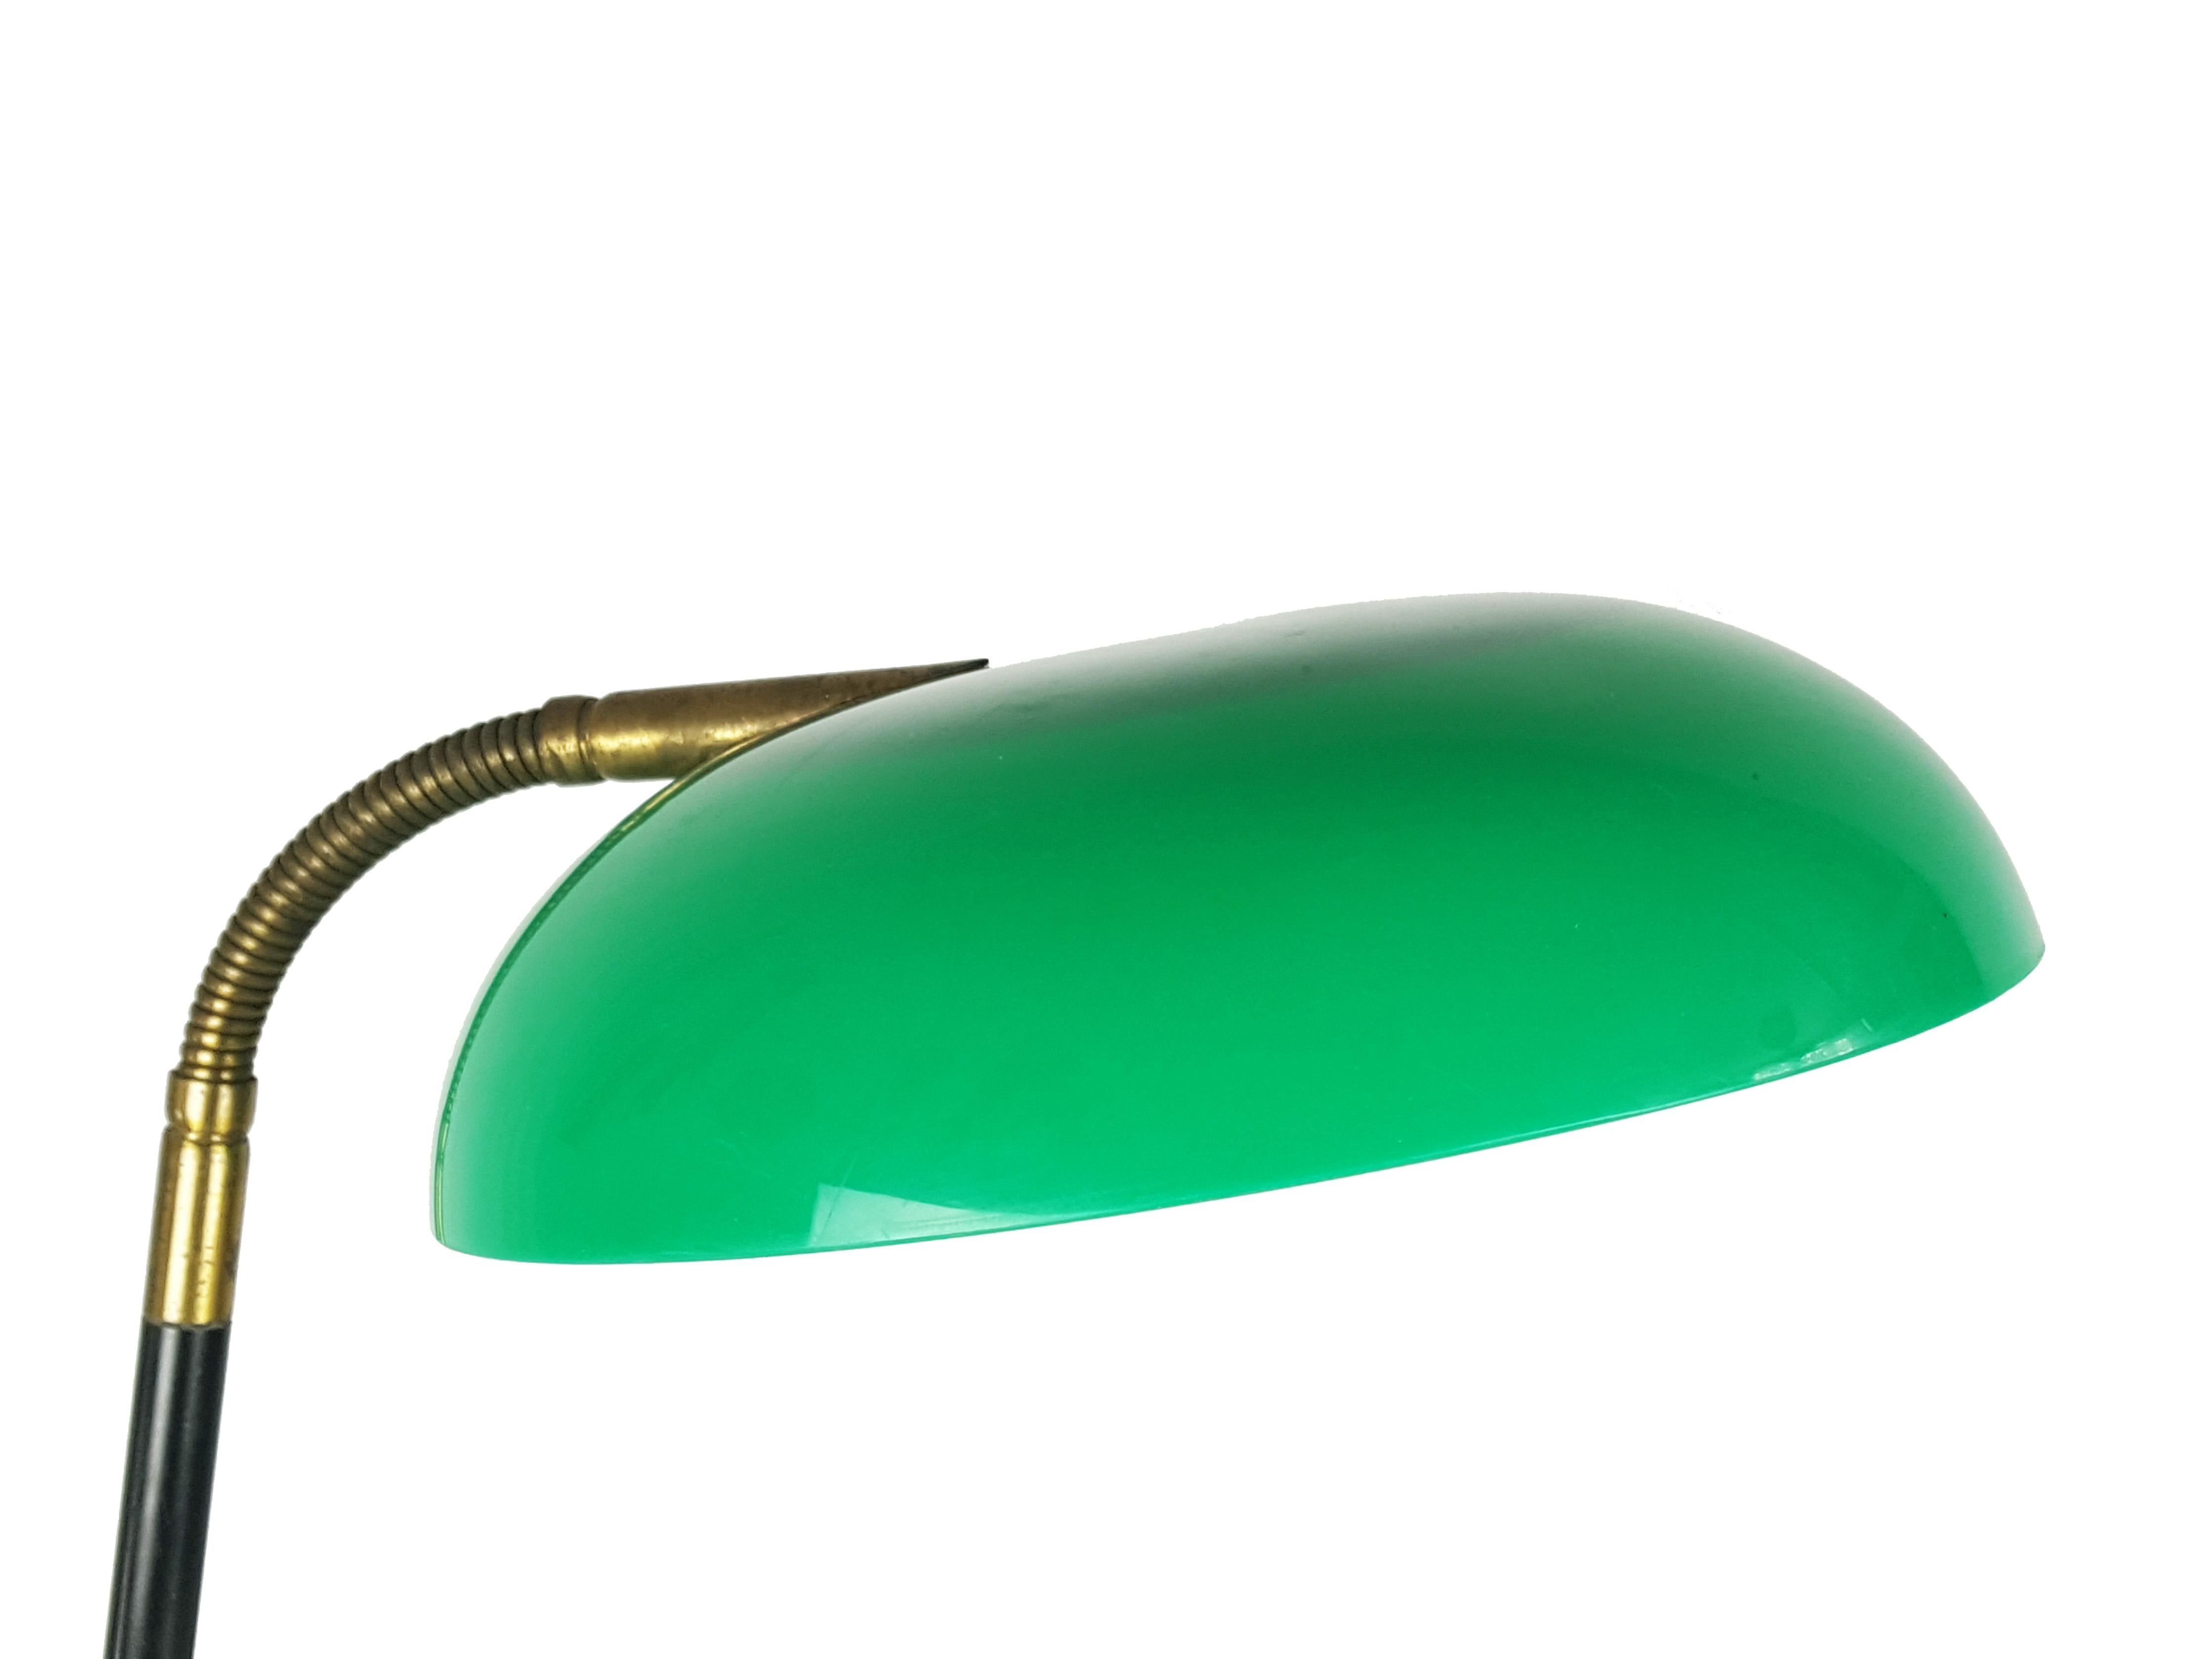 Verstellbare Tisch- oder Schreibtischleuchte, entworfen und hergestellt von Stilux, Mailand, in den 1960er Jahren. Sockel aus weißem Marmor, Struktur aus lackiertem Messing, Schirm aus grünem Plexiglas. Die Lampe hat 2 kleine Glühbirnen.